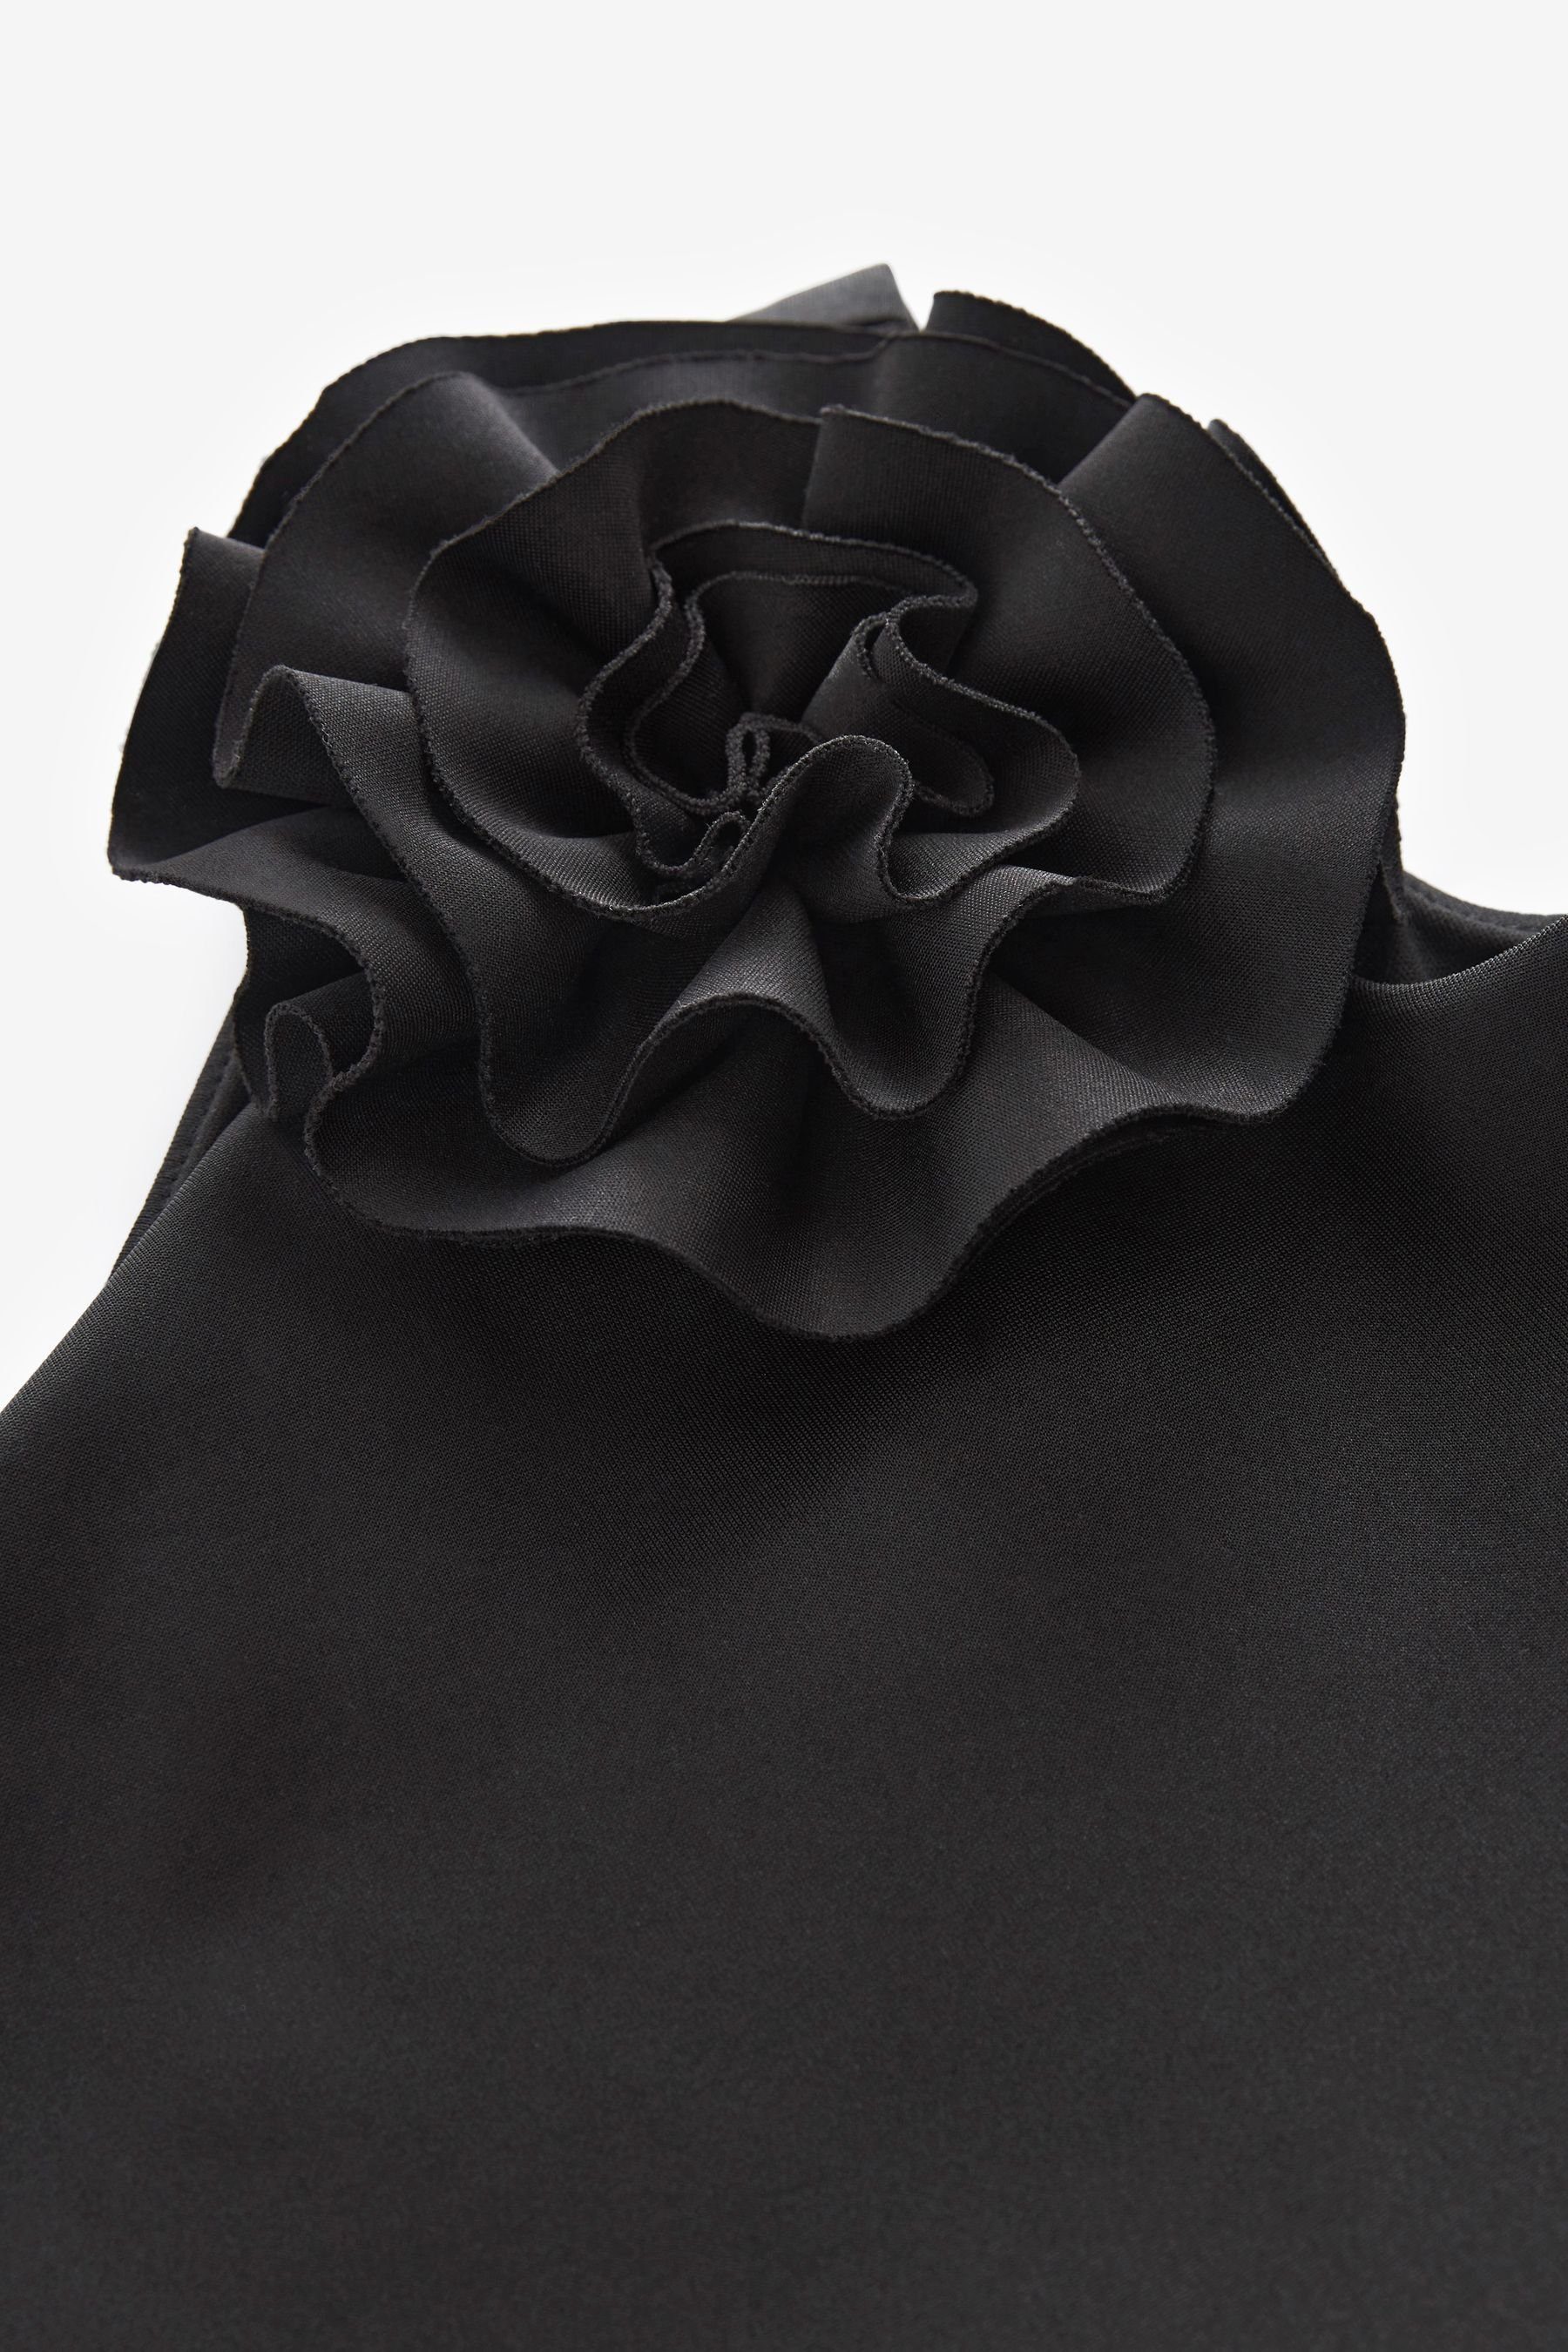 Next Partykleid Asymmetrisches Flower besondere Neoprenkleid Black (1-tlg) für Corsage Anlässe 3D